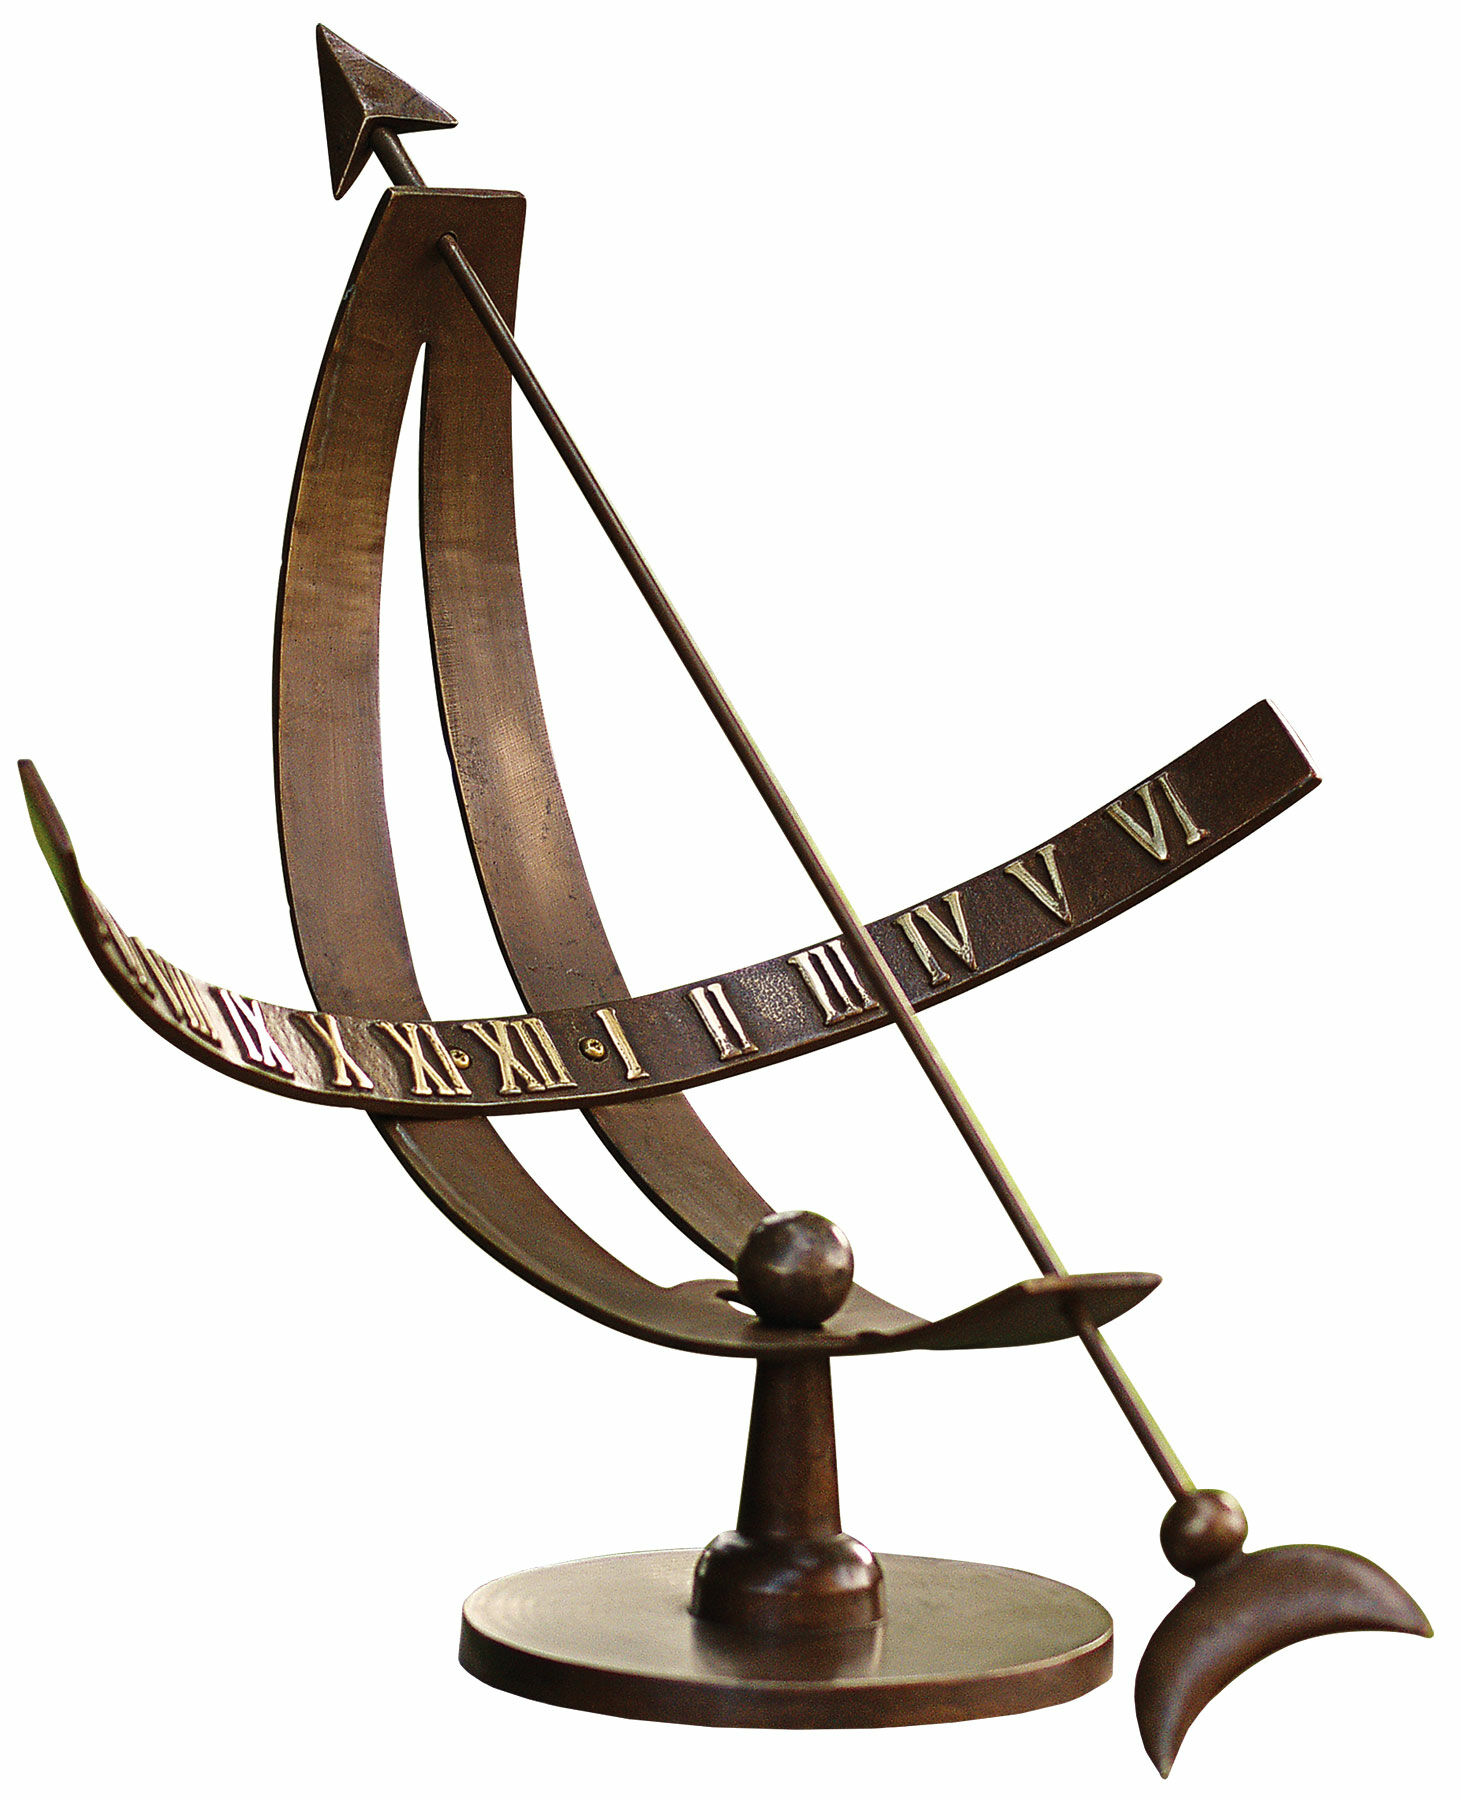 Solur "Copernicus", bronze